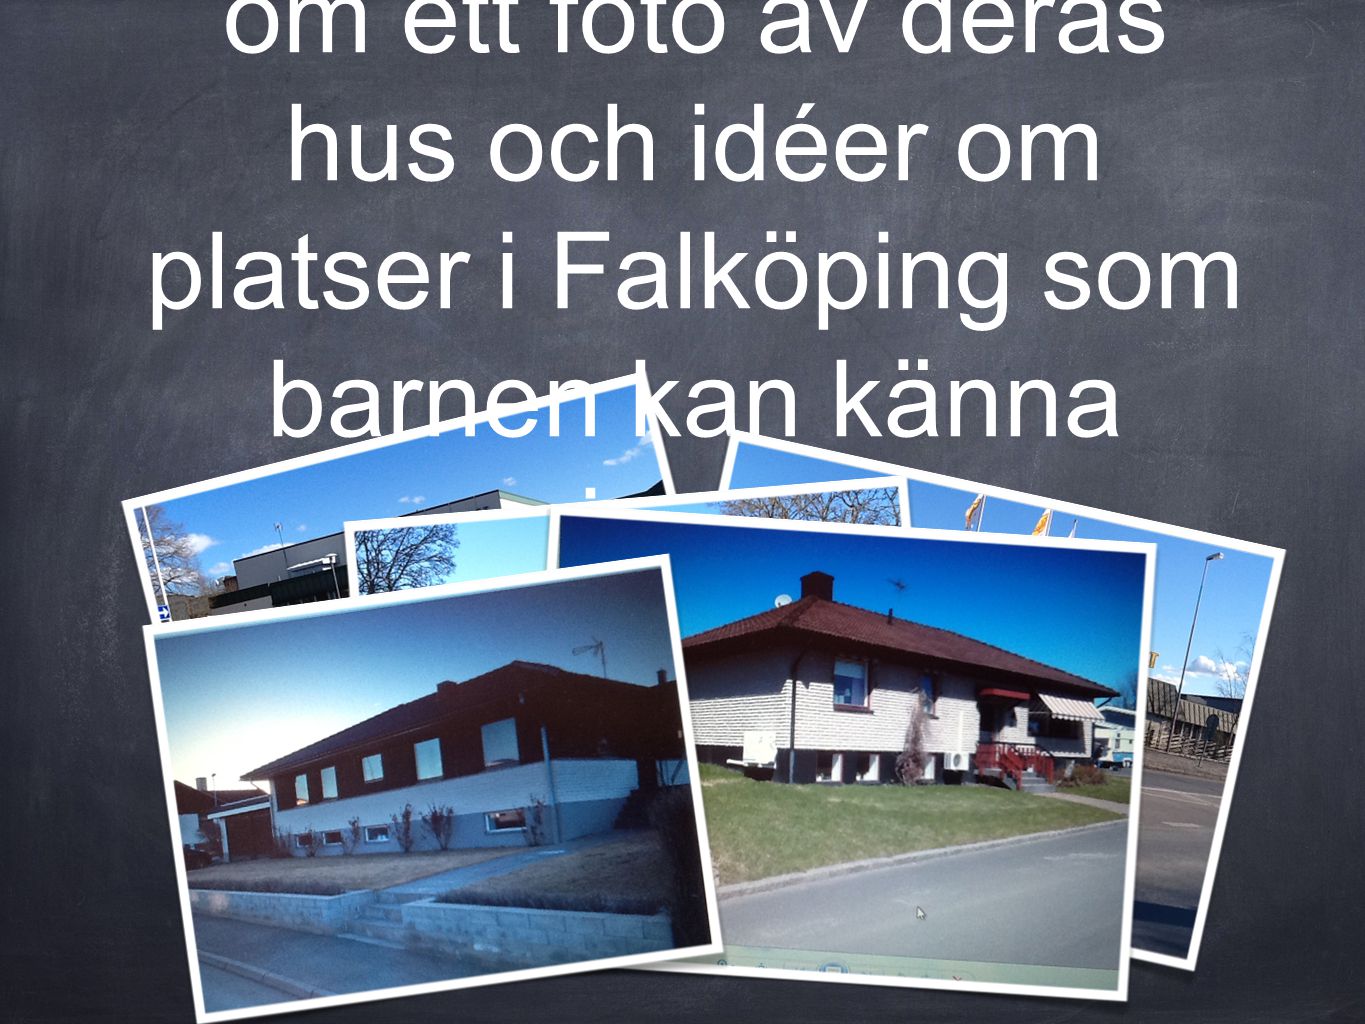 Vi skickar ett mail till alla föräldrar där vi ber om ett foto av deras hus och idéer om platser i Falköping som barnen kan känna igen.